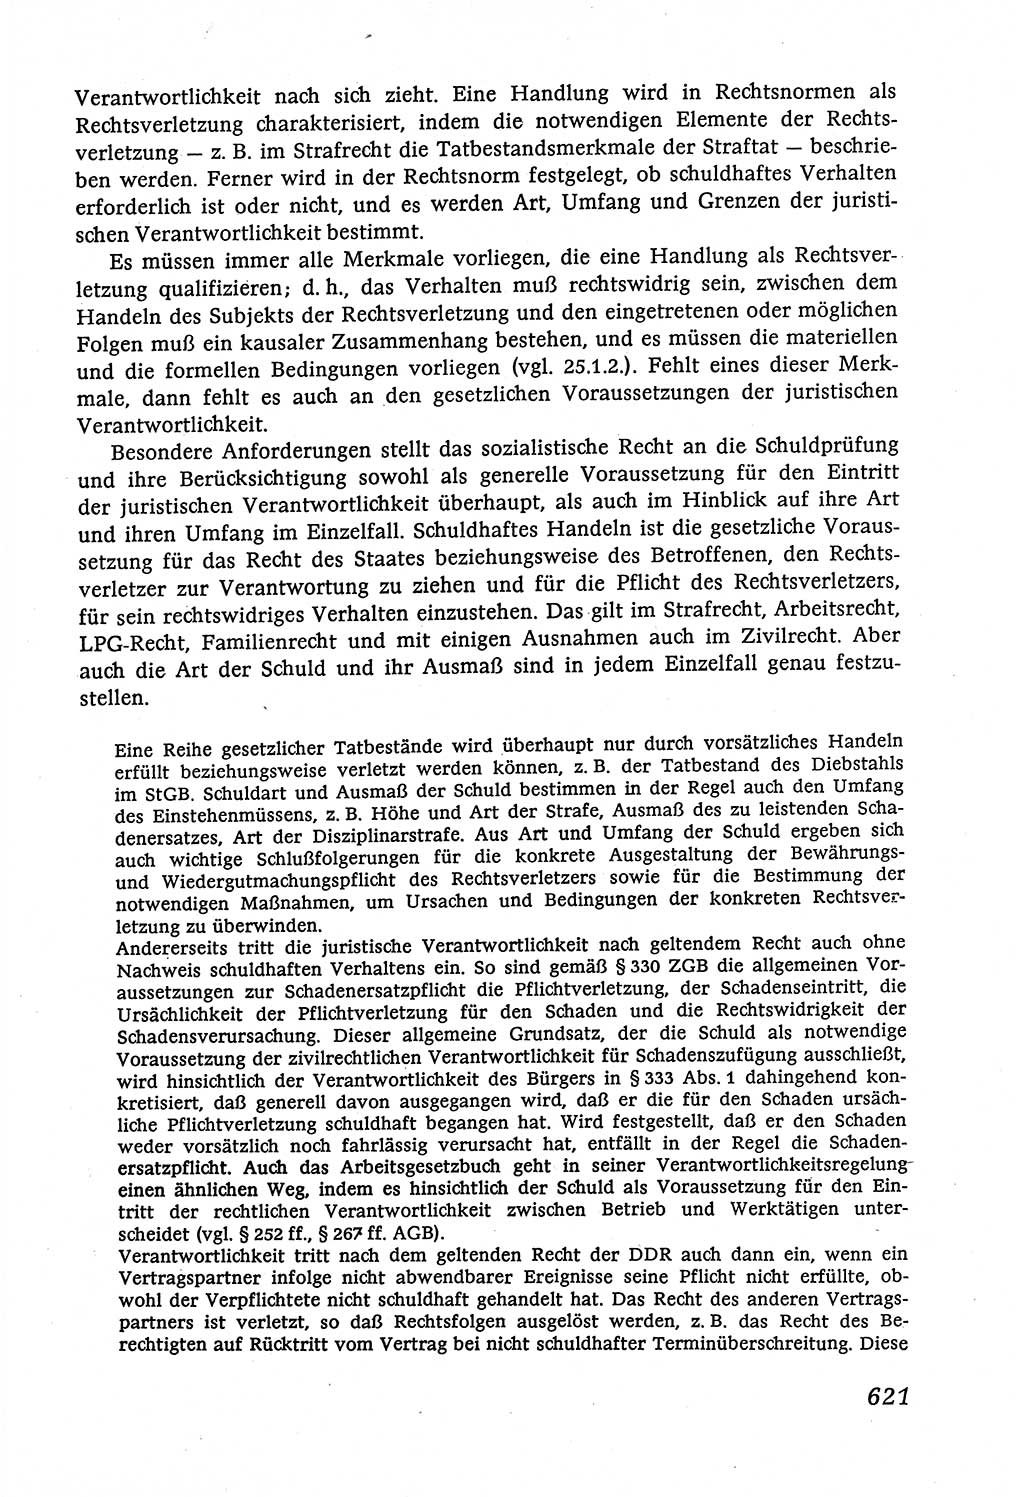 Marxistisch-leninistische (ML) Staats- und Rechtstheorie [Deutsche Demokratische Republik (DDR)], Lehrbuch 1980, Seite 621 (ML St.-R.-Th. DDR Lb. 1980, S. 621)